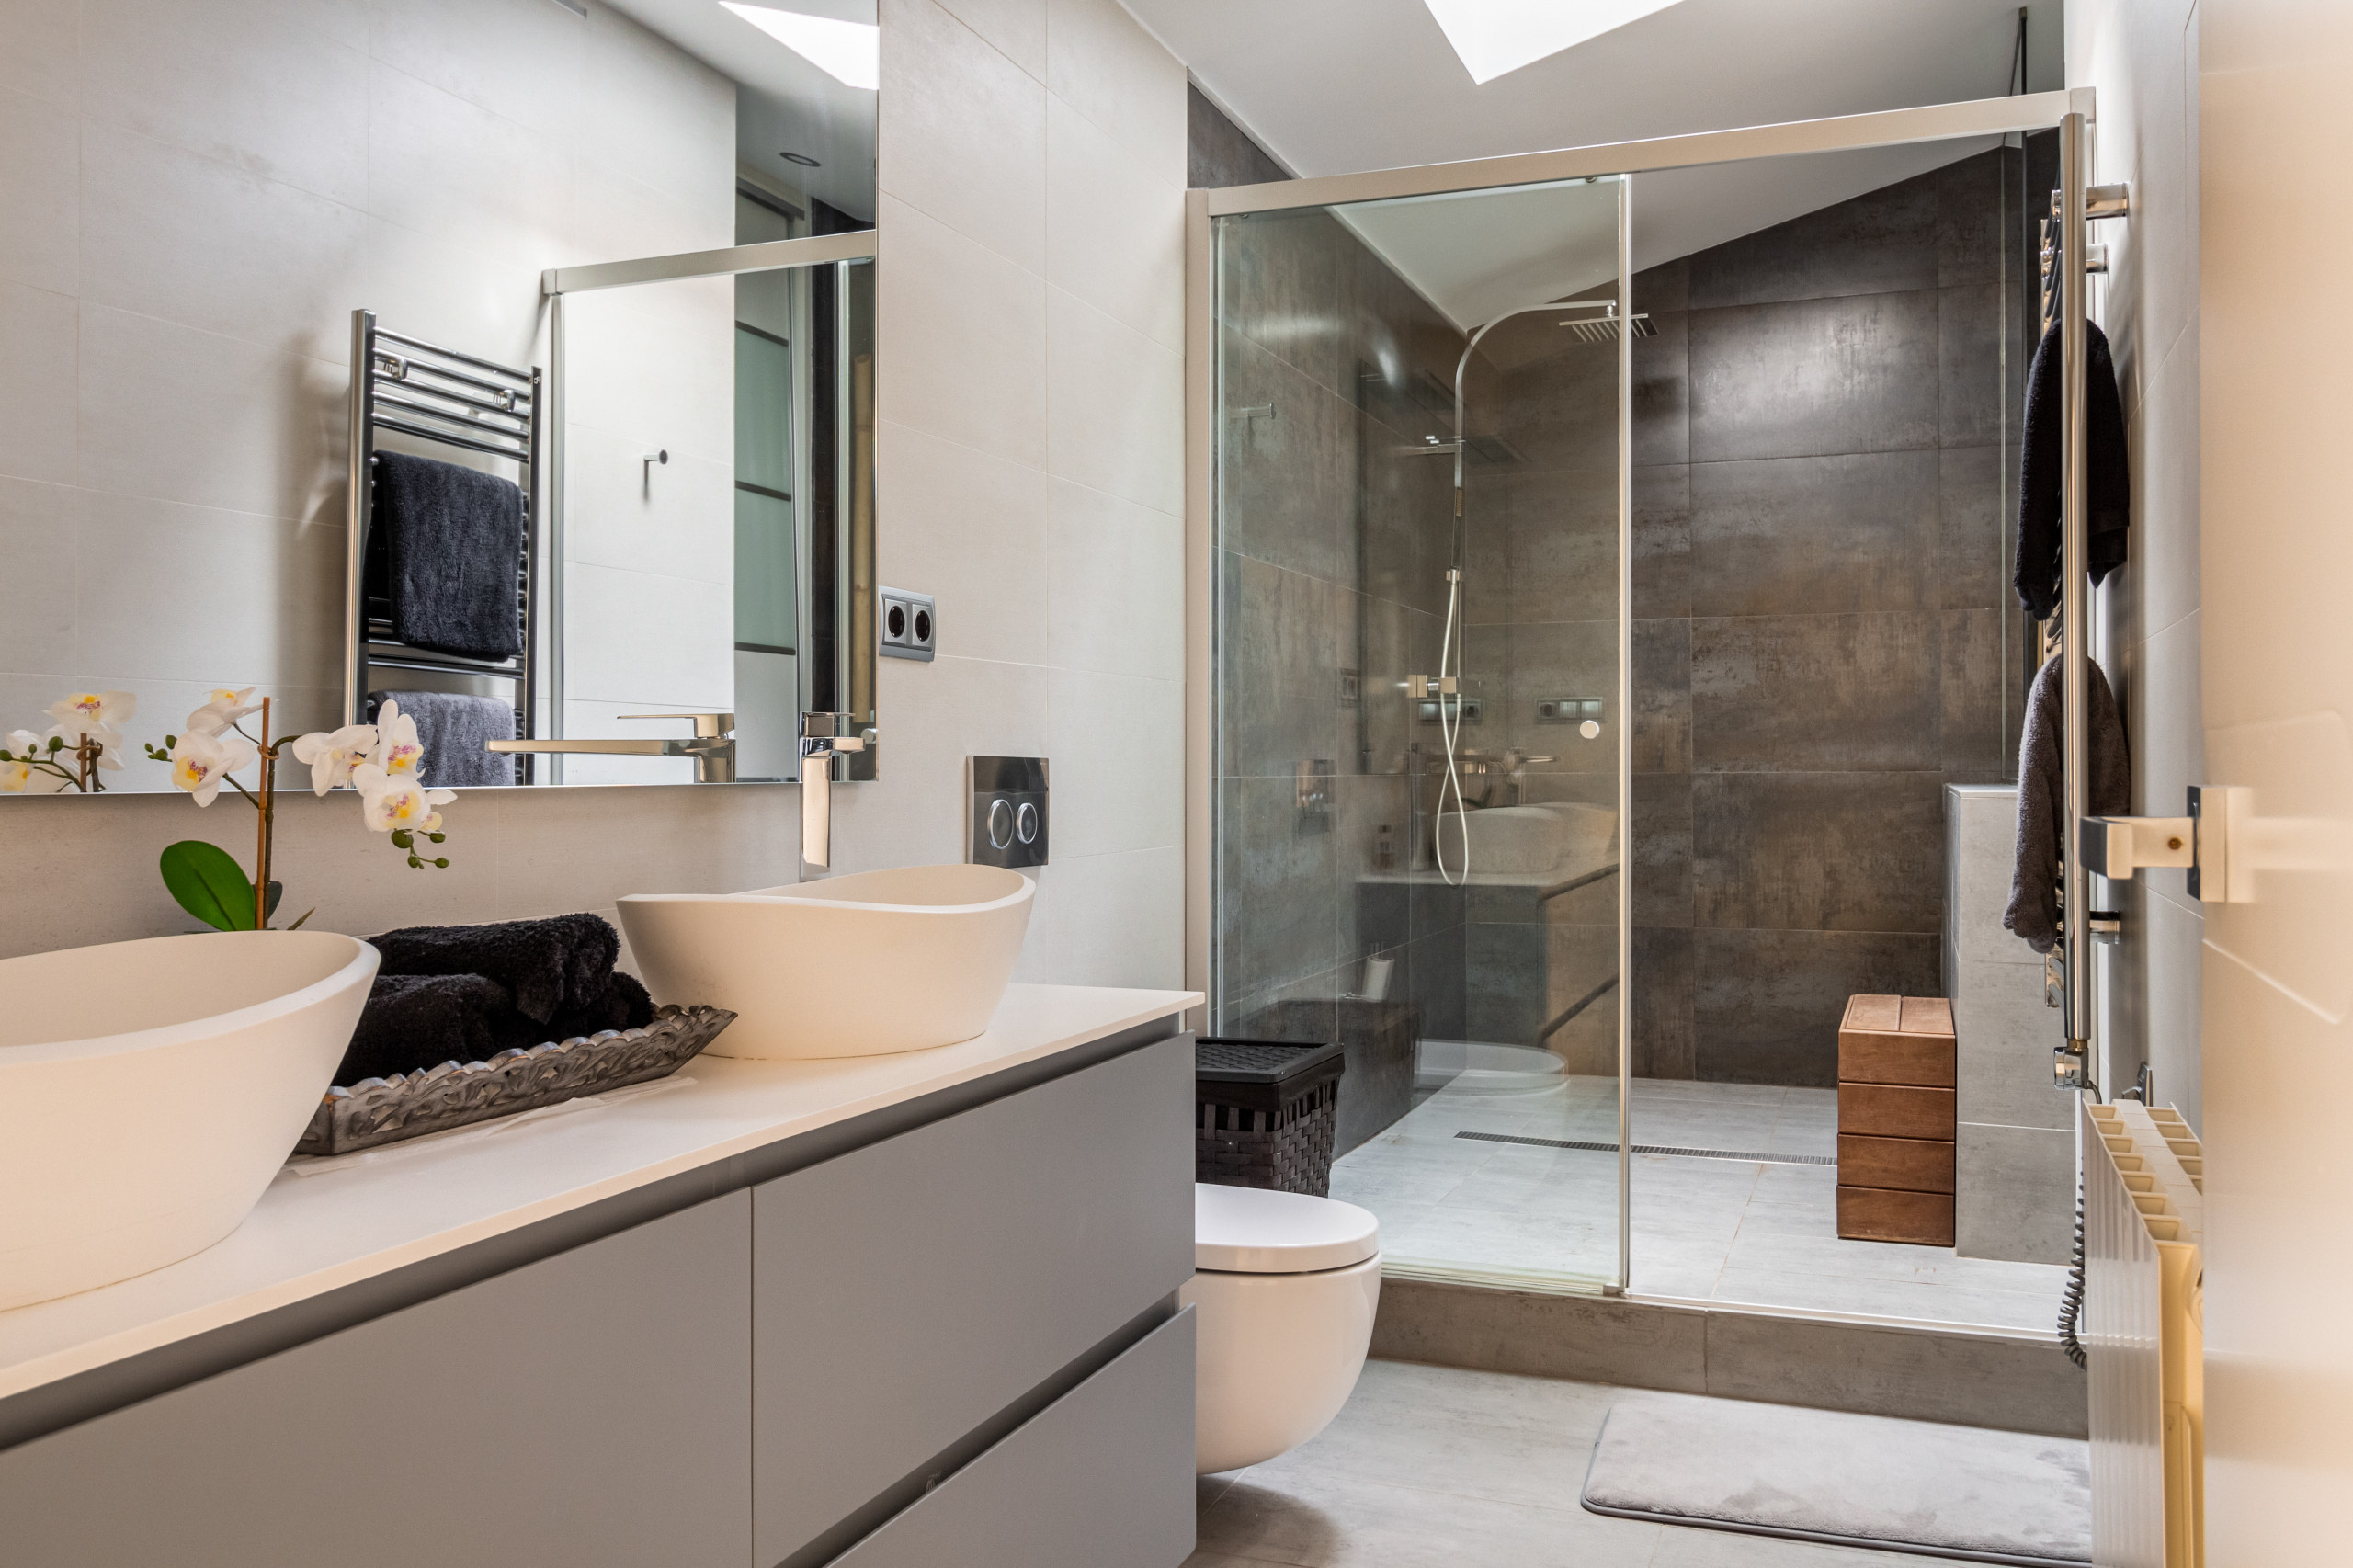 Baño de 2 piezas y espacio para una ducha muy amplia (con área seca y húmeda) Abacube Home Planner